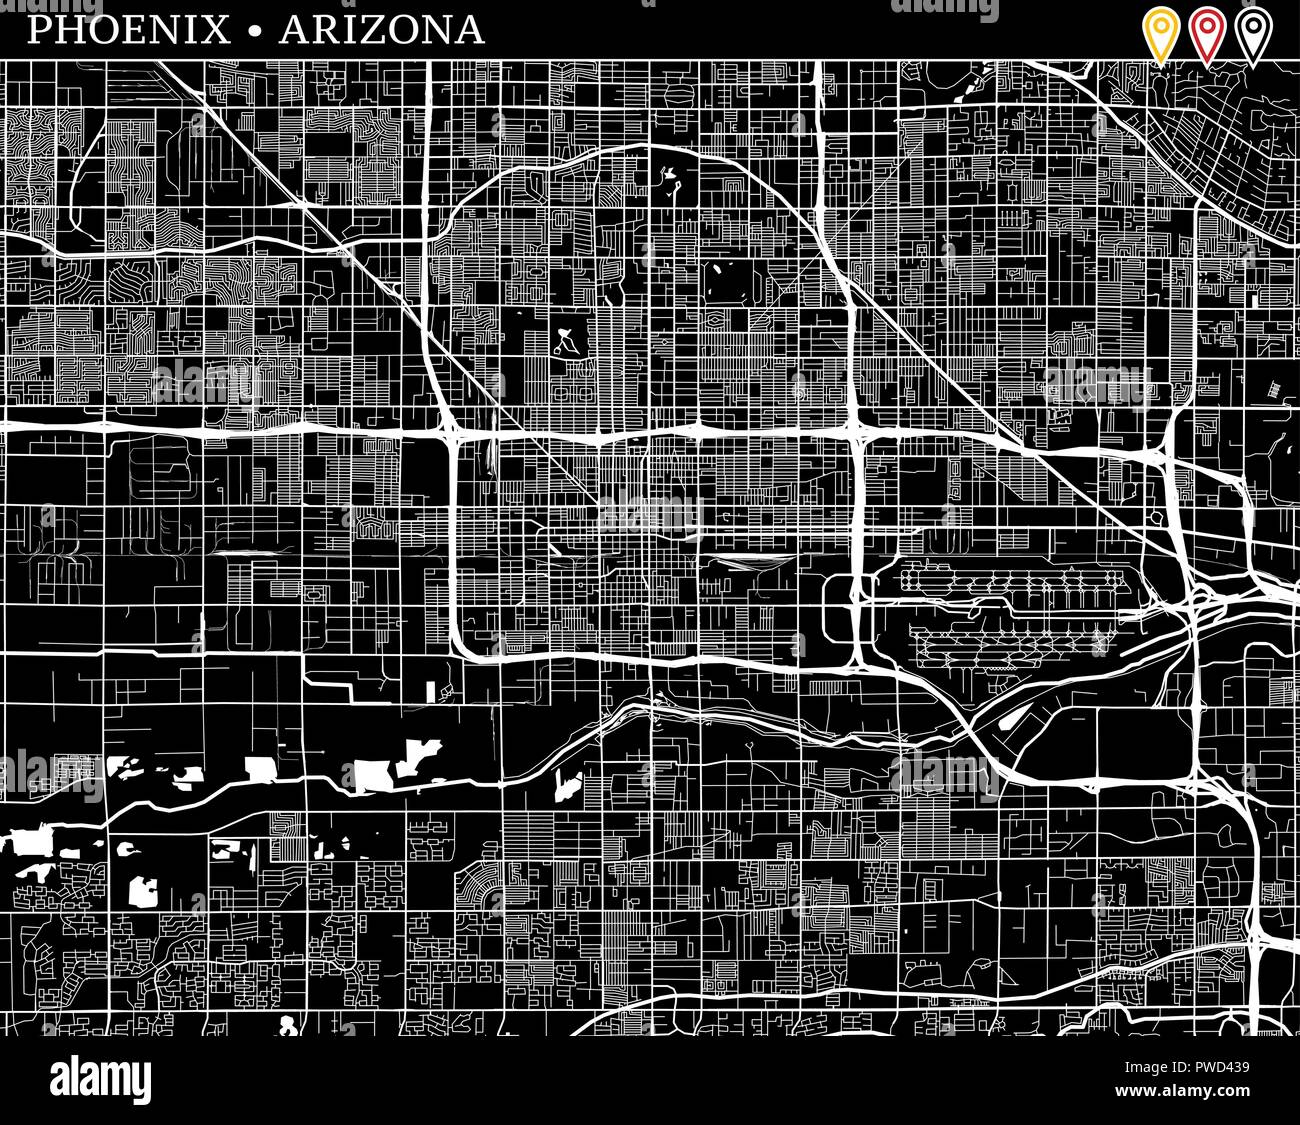 Einfache Karte von Phoenix, Arizona, USA. Schwarze und weiße Version für saubere Hintergründe und druckt. Diese Karte von Phoenix enthält drei Markierungen, die Grou Stock Vektor